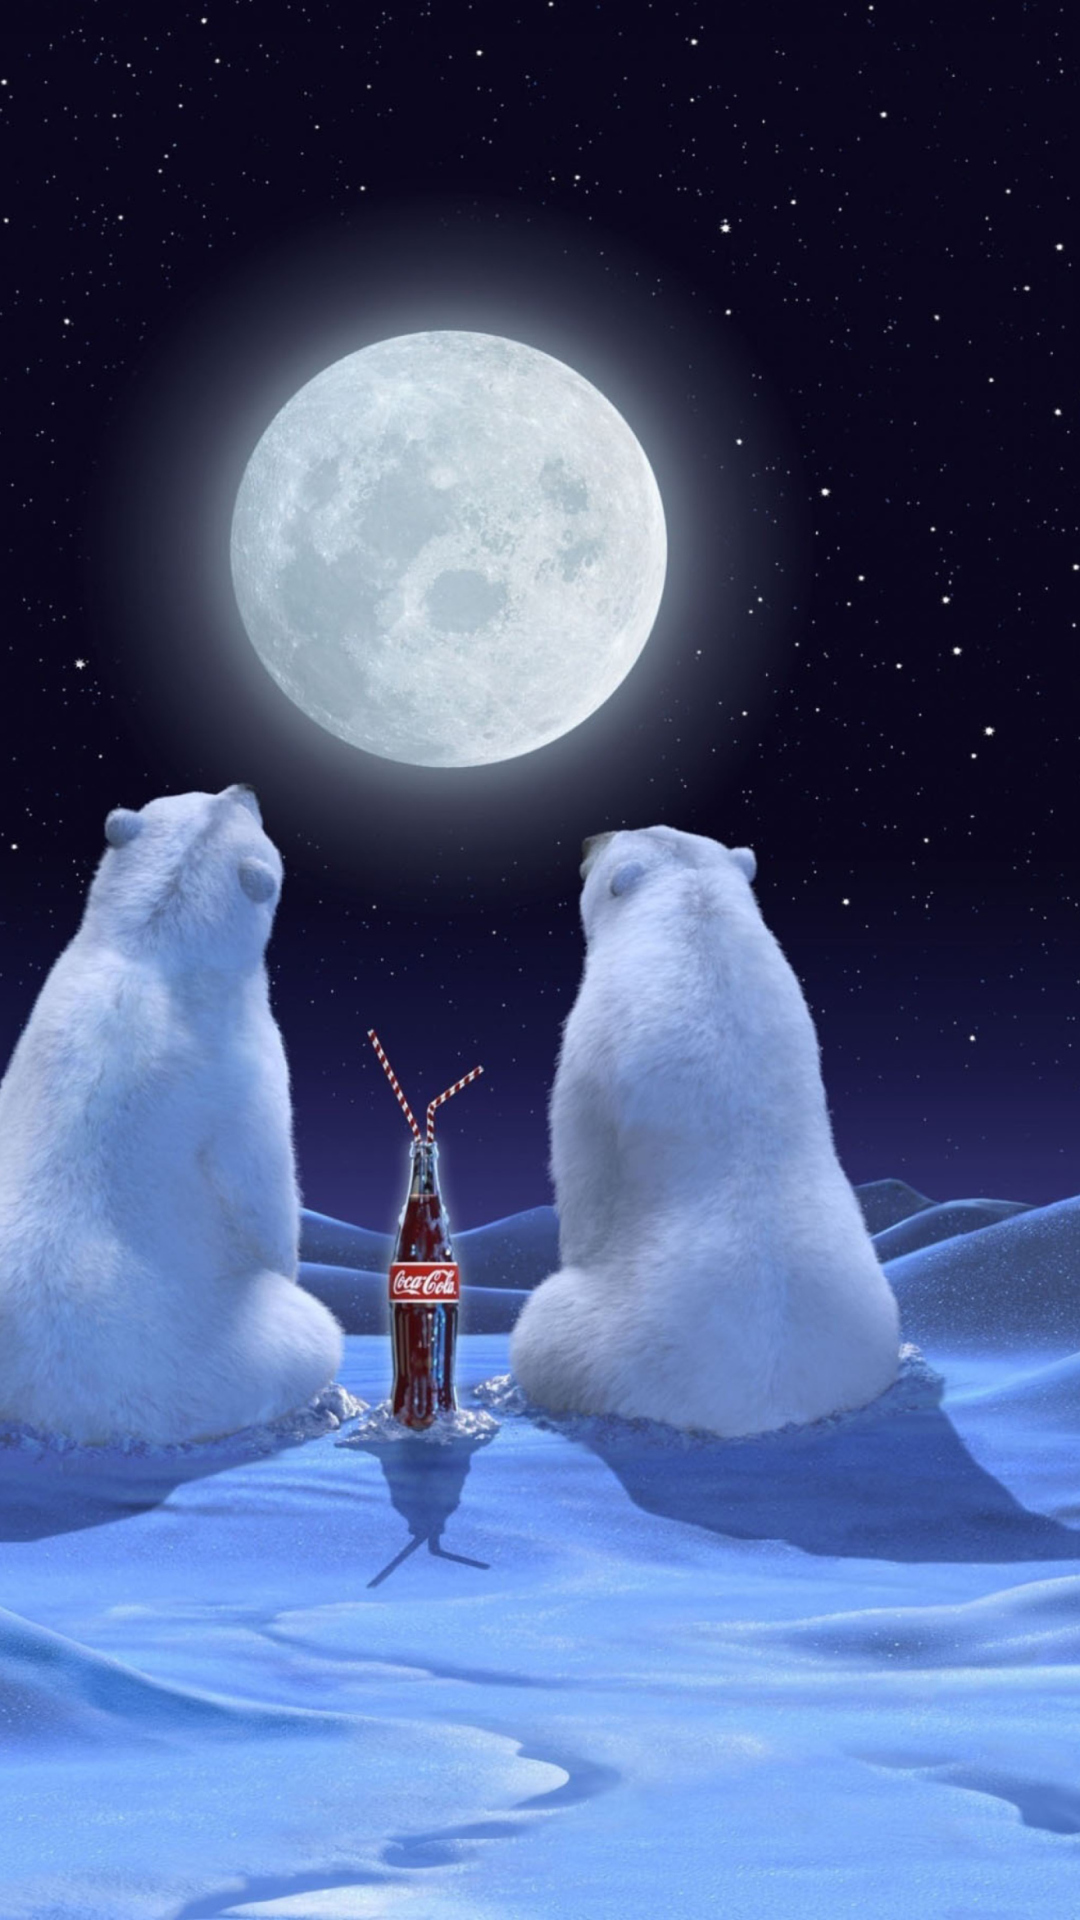 Polar Bears And Coca Cola wallpaper 1080x1920